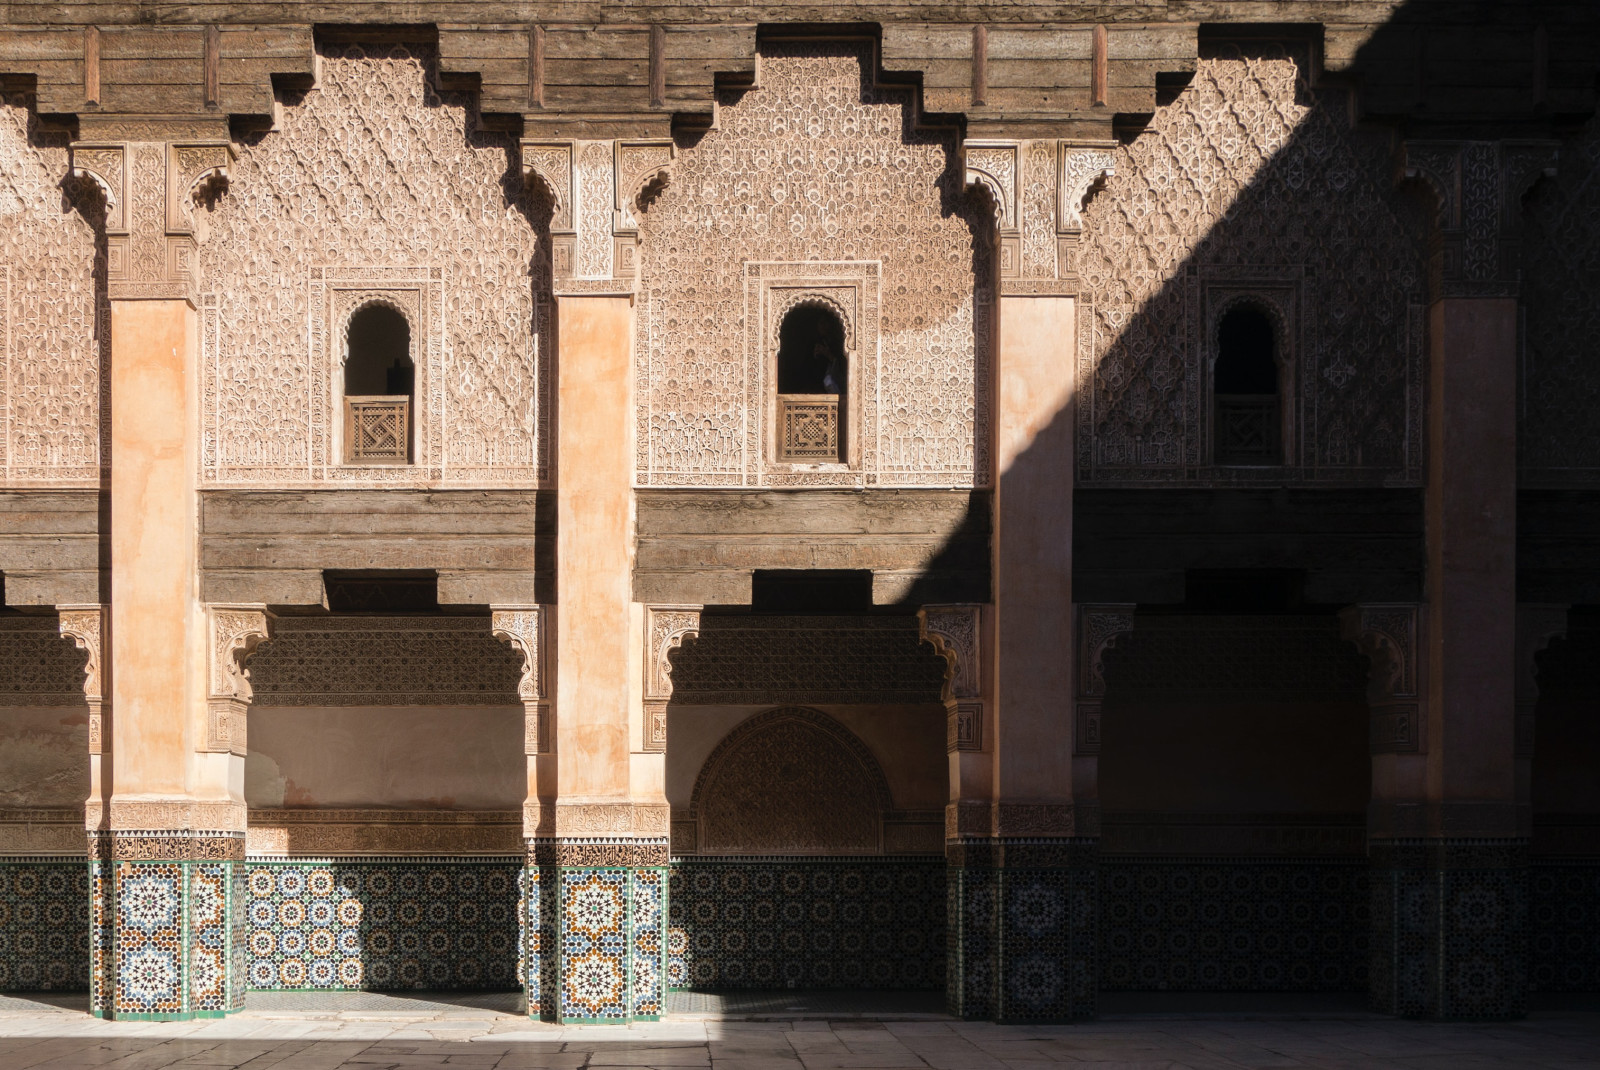 The architecture of Marrakech, Morroco. 